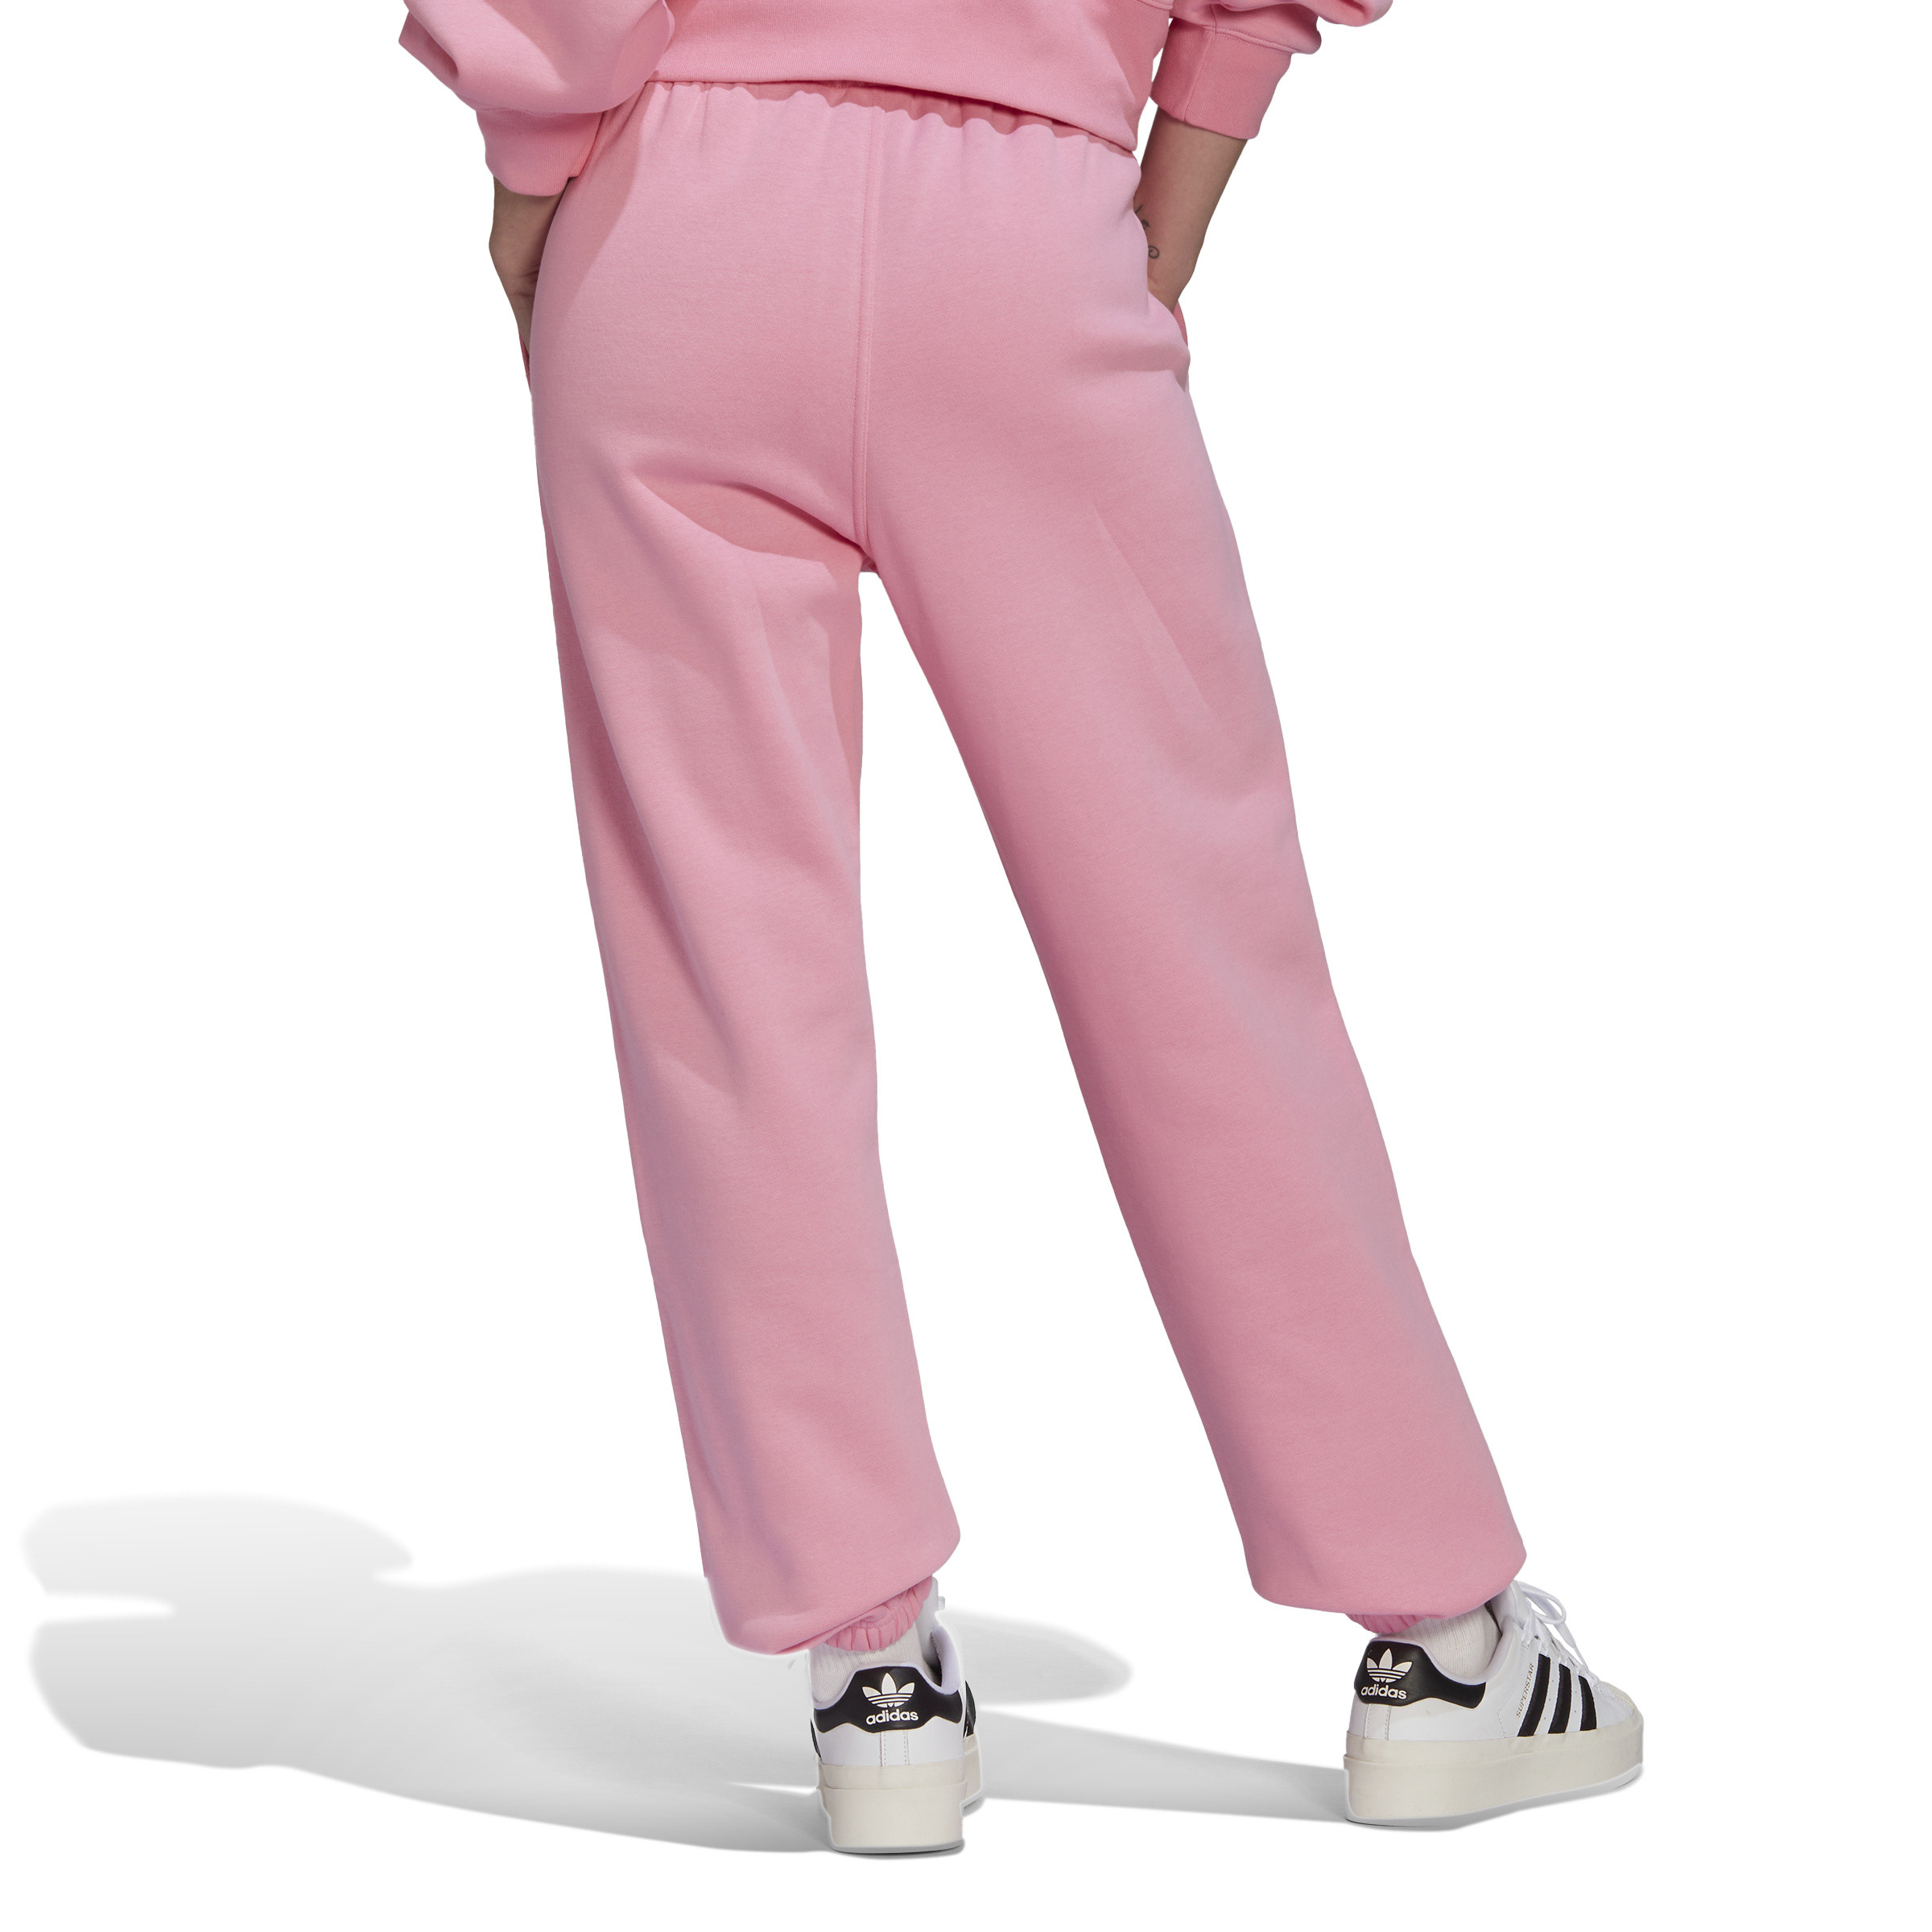 Adidas - Pantaloni adicolor essentials fleece joggers, Rosa, large image number 5